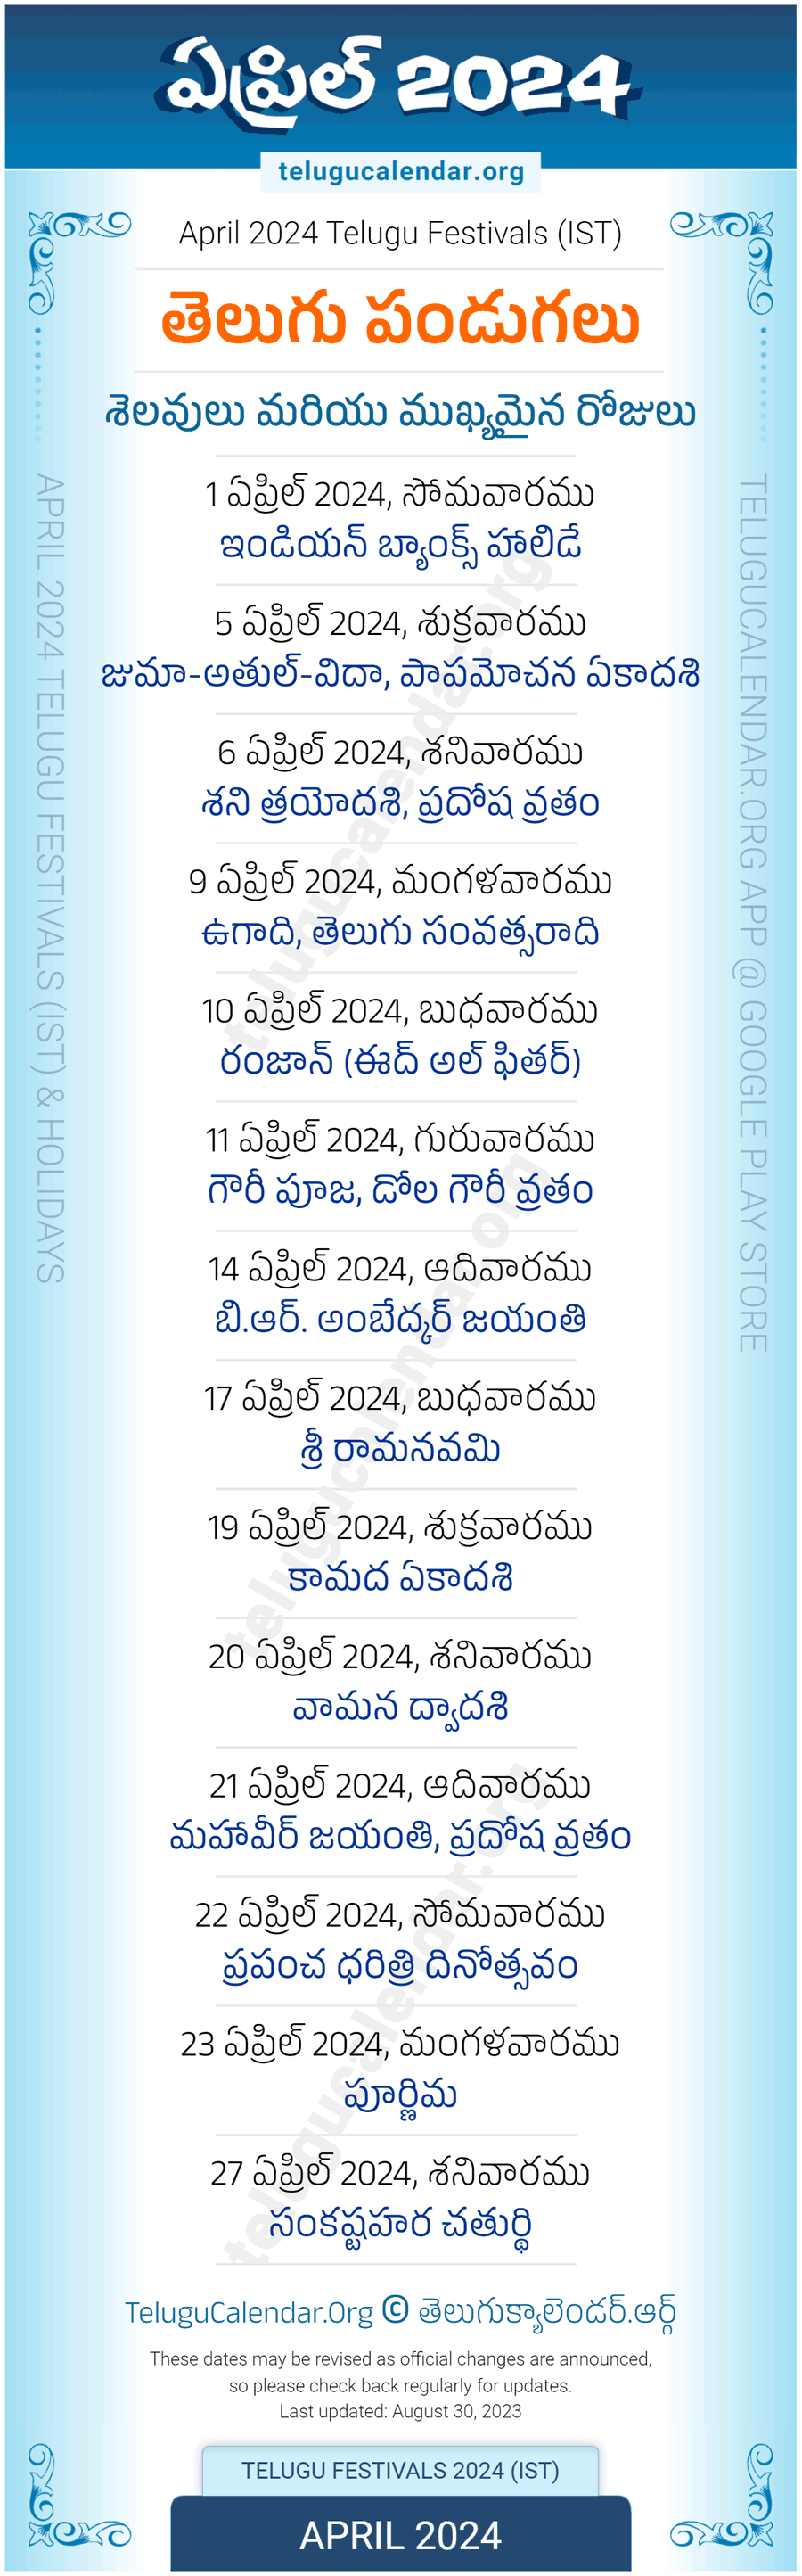 Telugu Festivals 2024 April Pdf Download in Telugu Calendar 2024 April